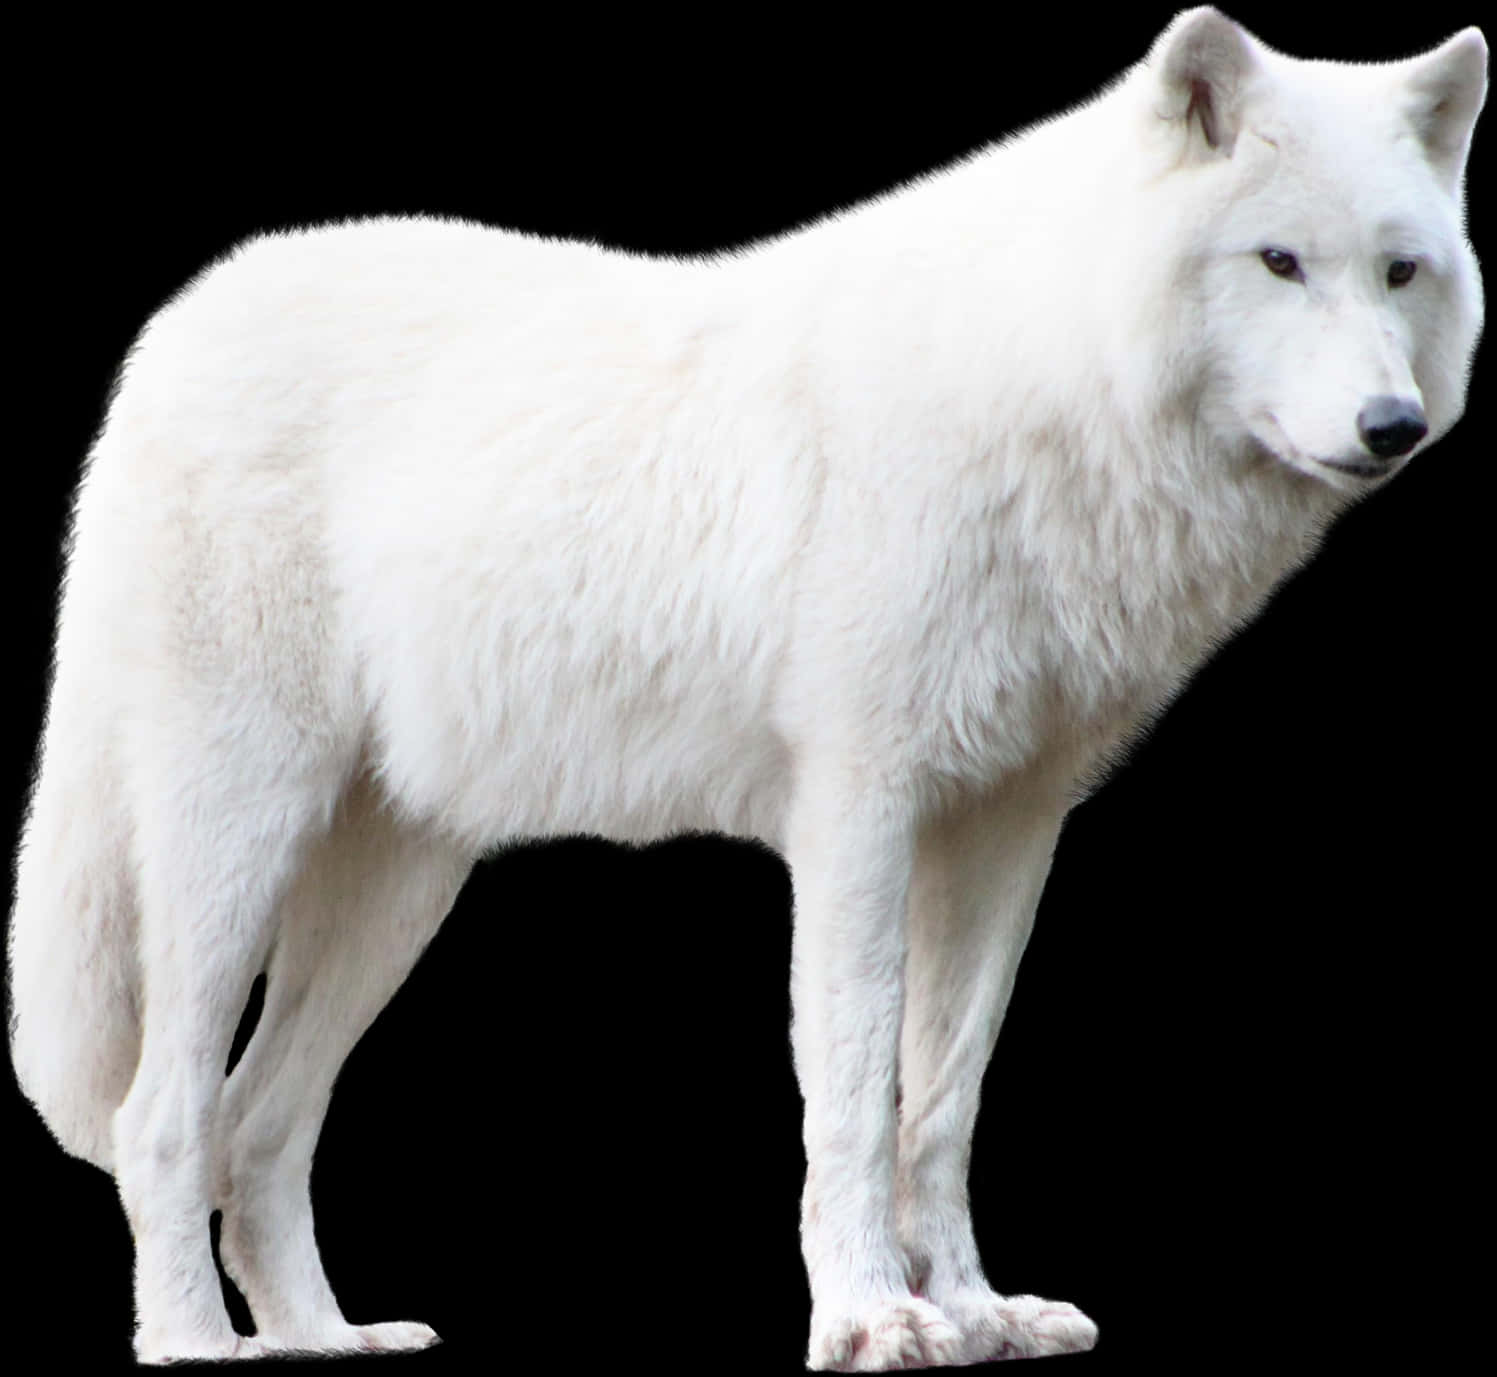 White Wolf Isolatedon Black Background.jpg